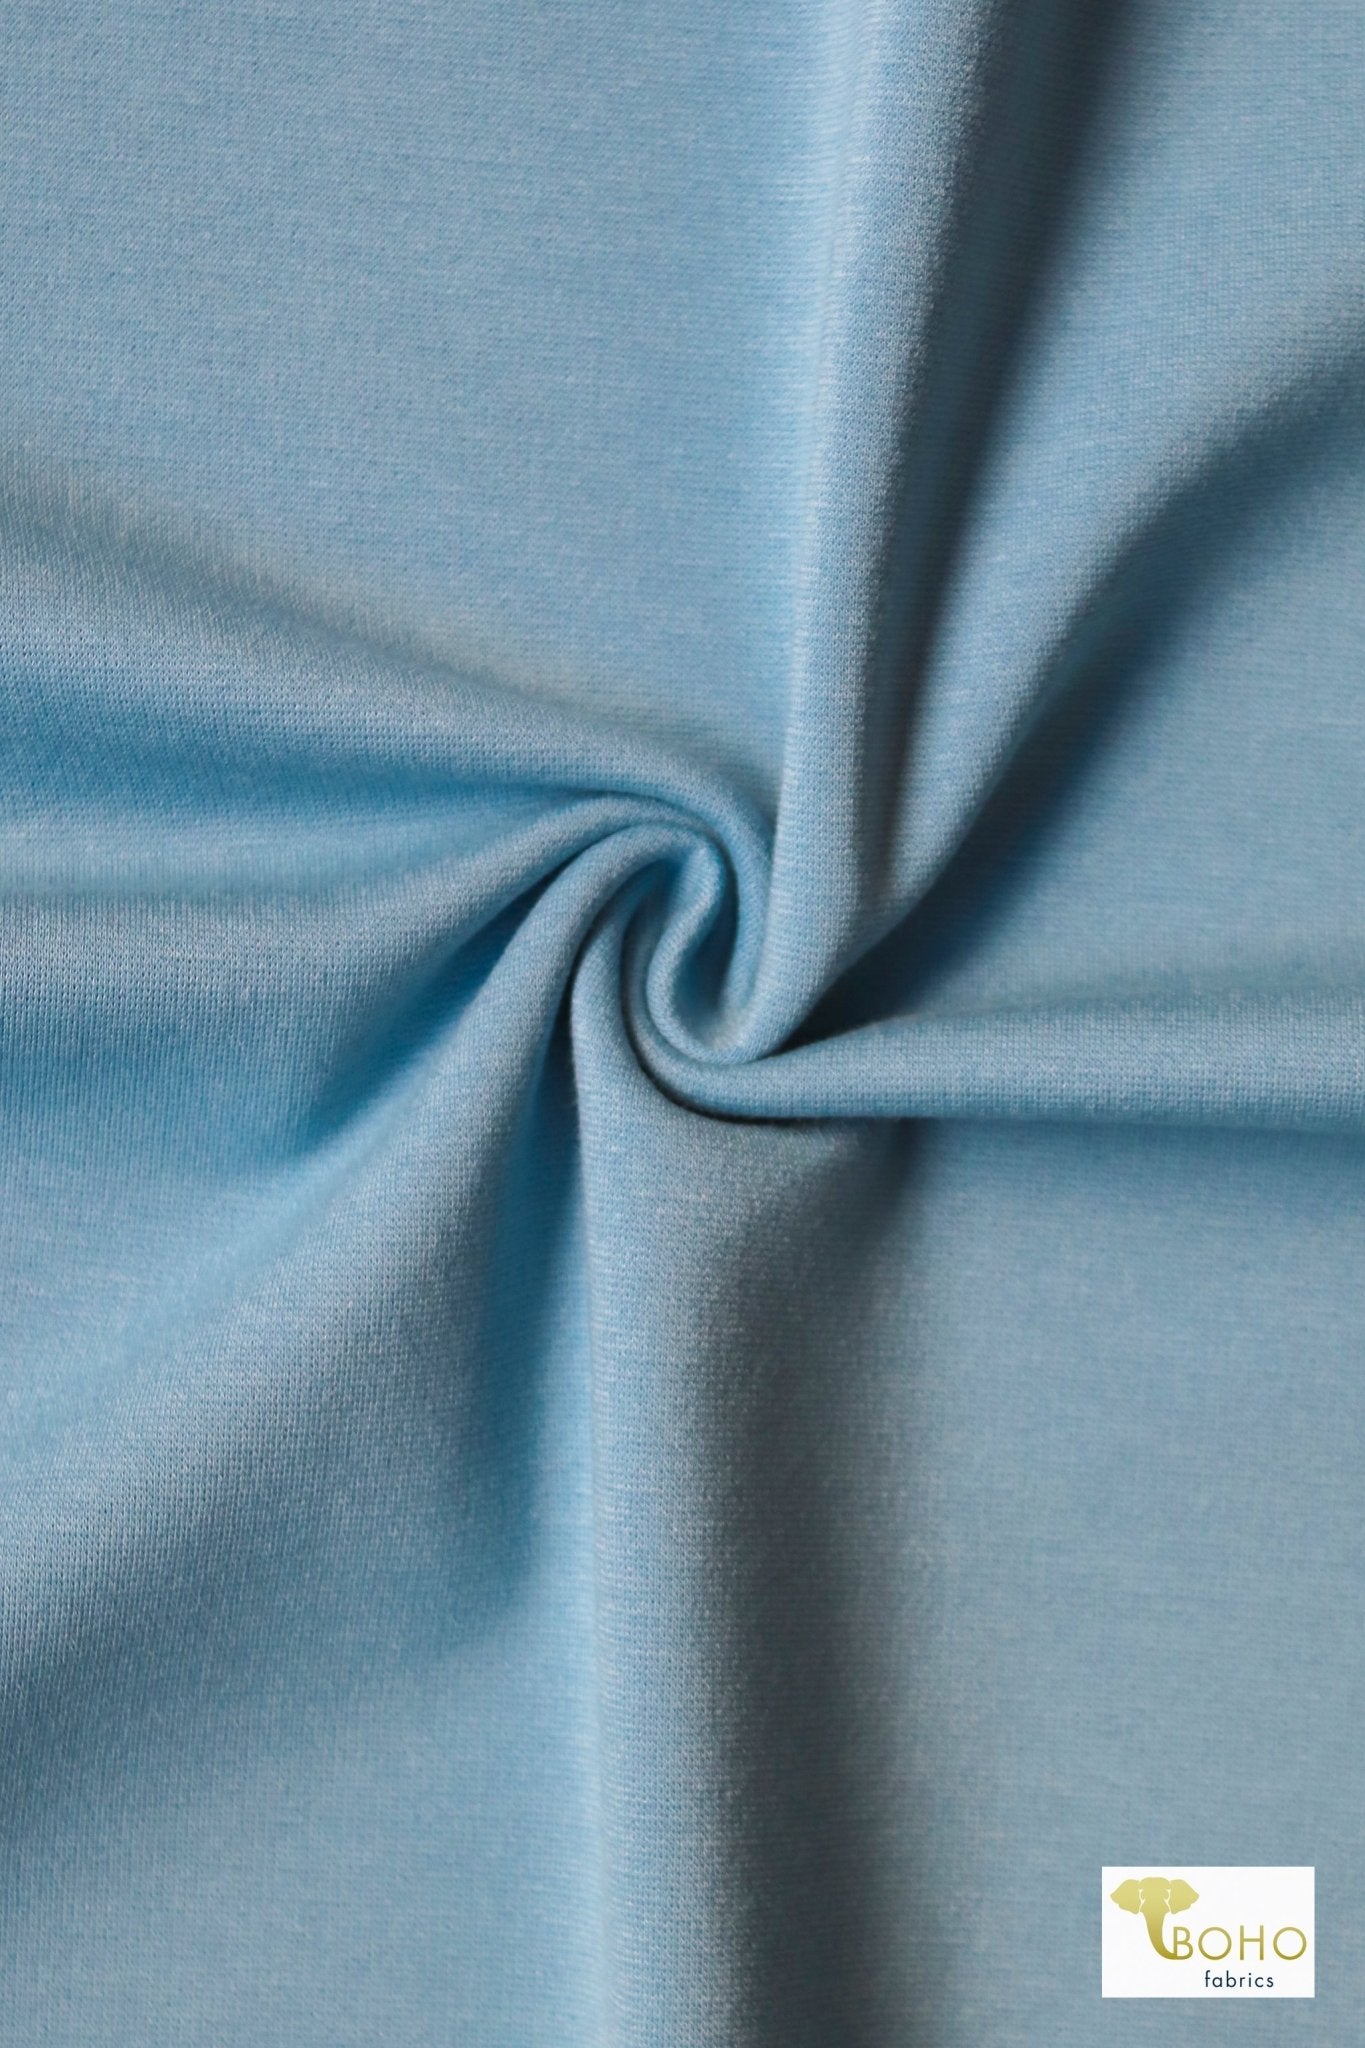 Light Blue, Ponte Solid Knit Fabric - Boho Fabrics